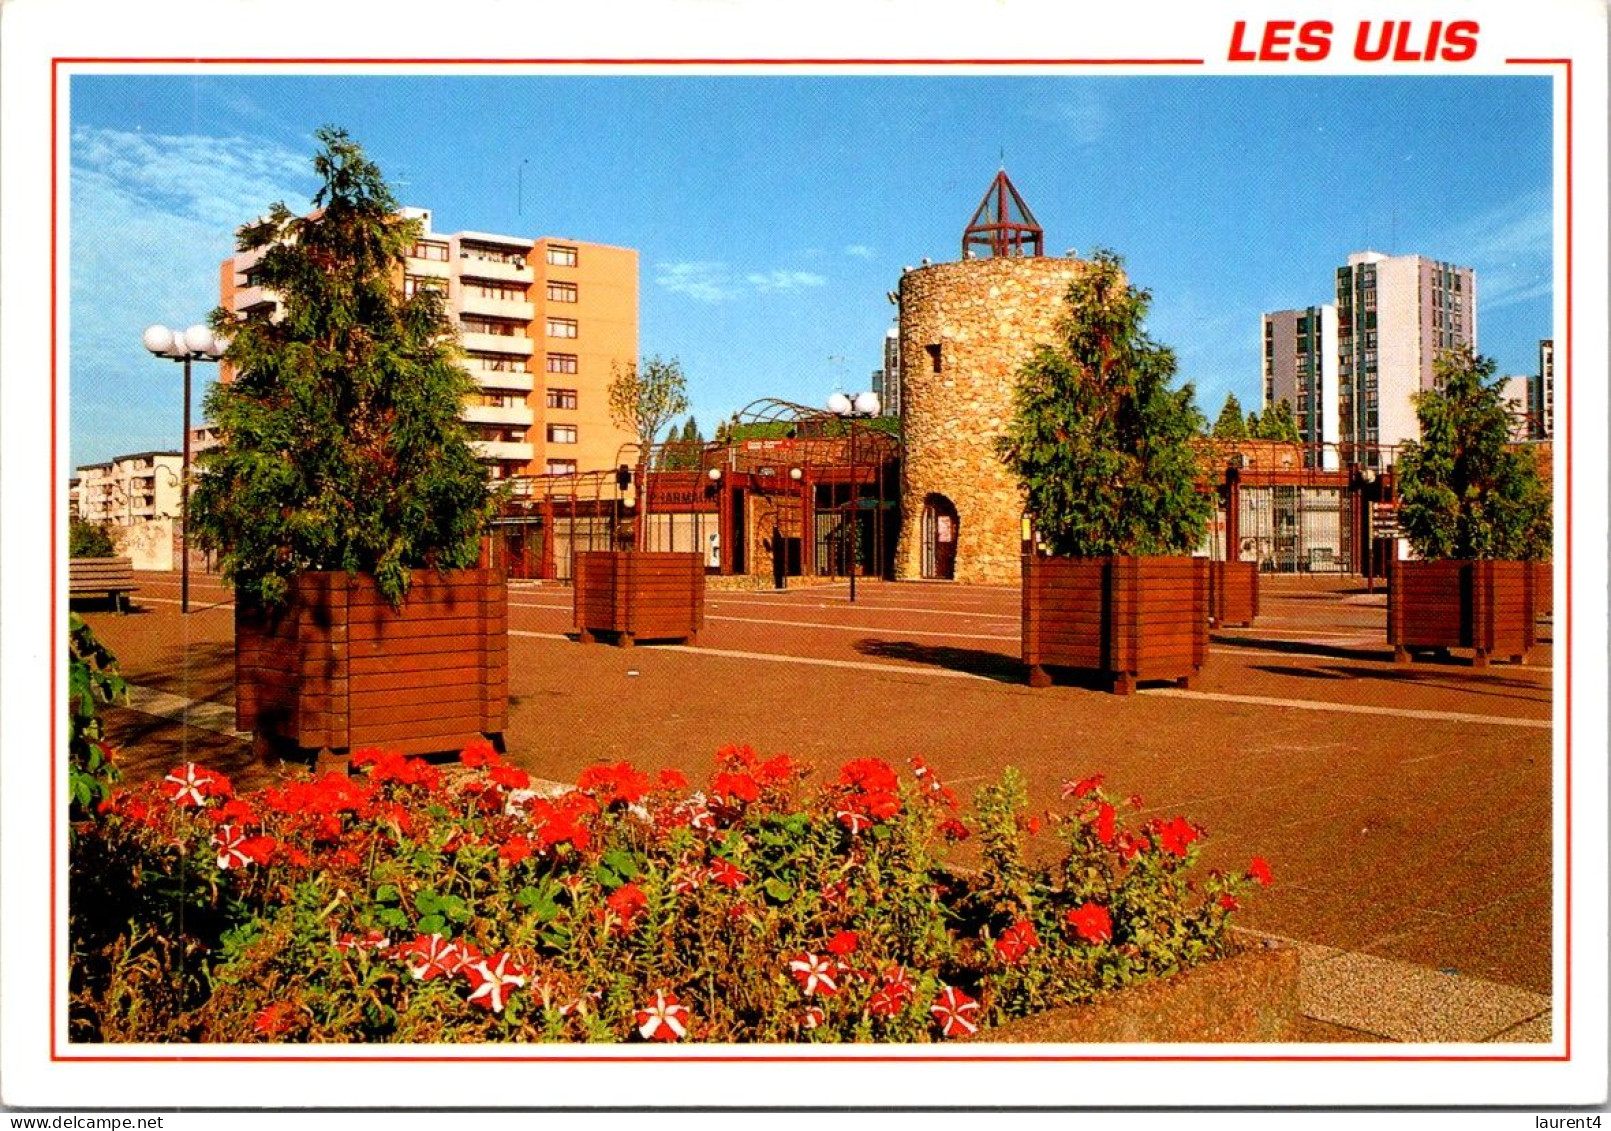 7-1-2024 (4 W 35) France - Les Ulis (2 Postcards) - Les Ulis